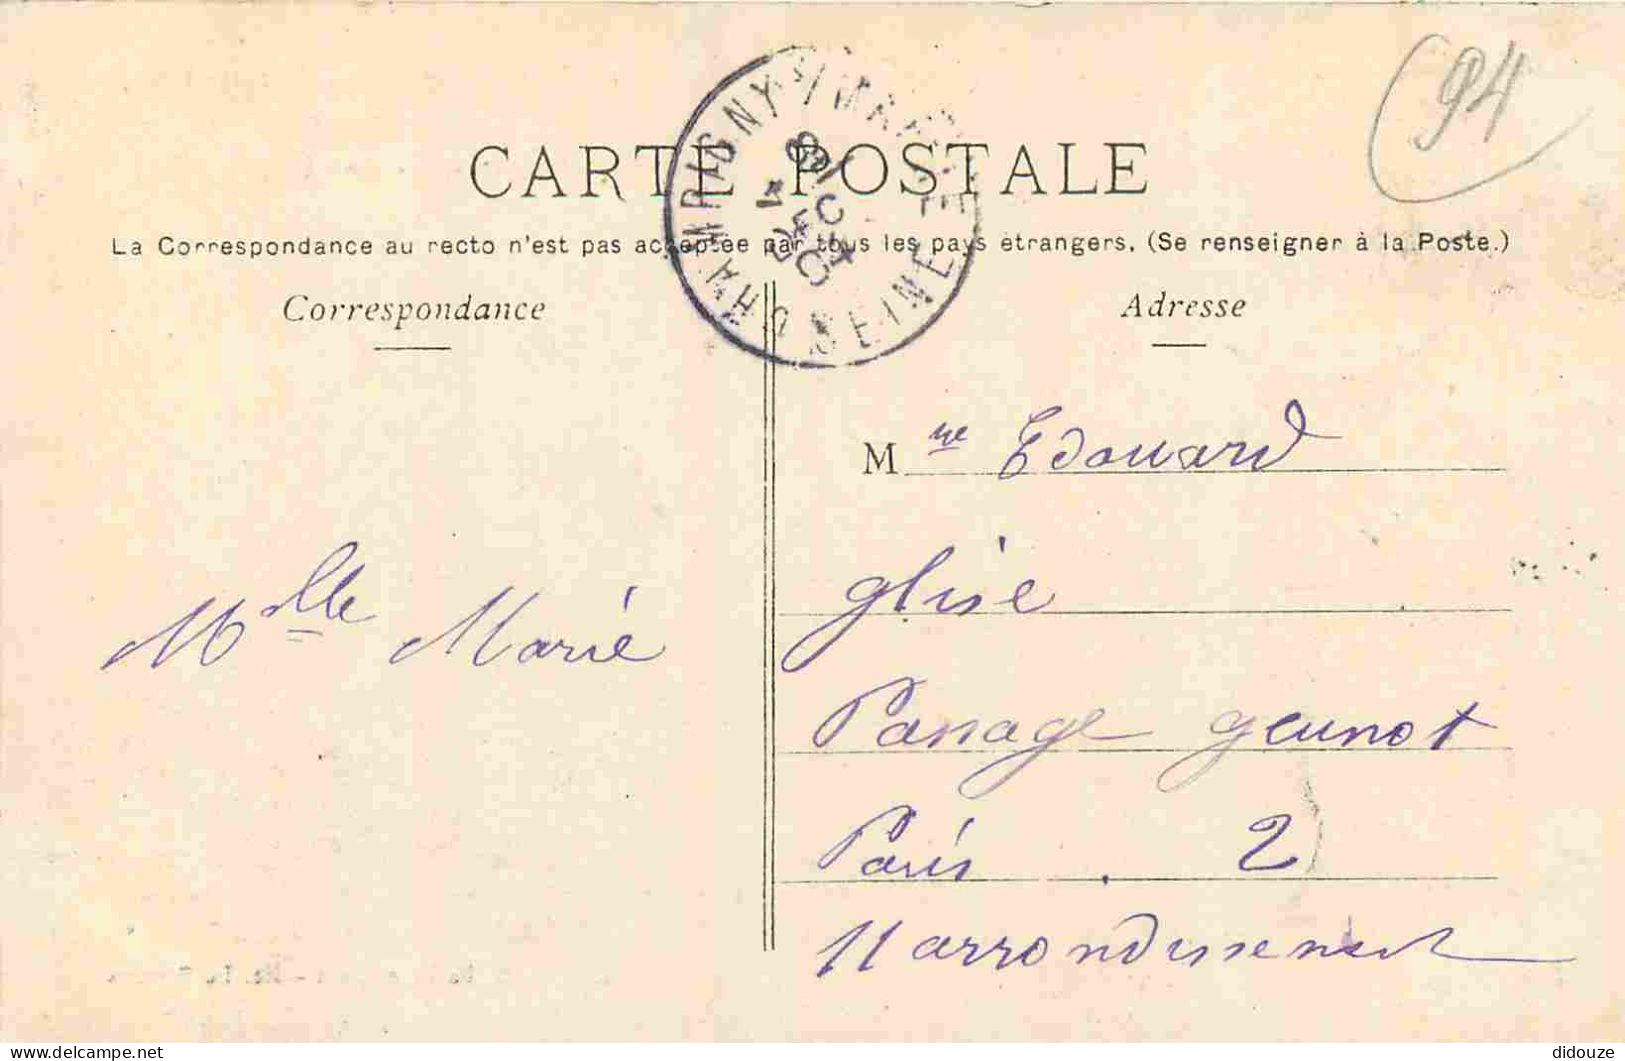 94 - Bry Sur Marne - Le Lendemain De La Bataille De Champigny à Bry Sur Marne 1870 - Croix Rouge - Militaria - CPA - Obl - Bry Sur Marne